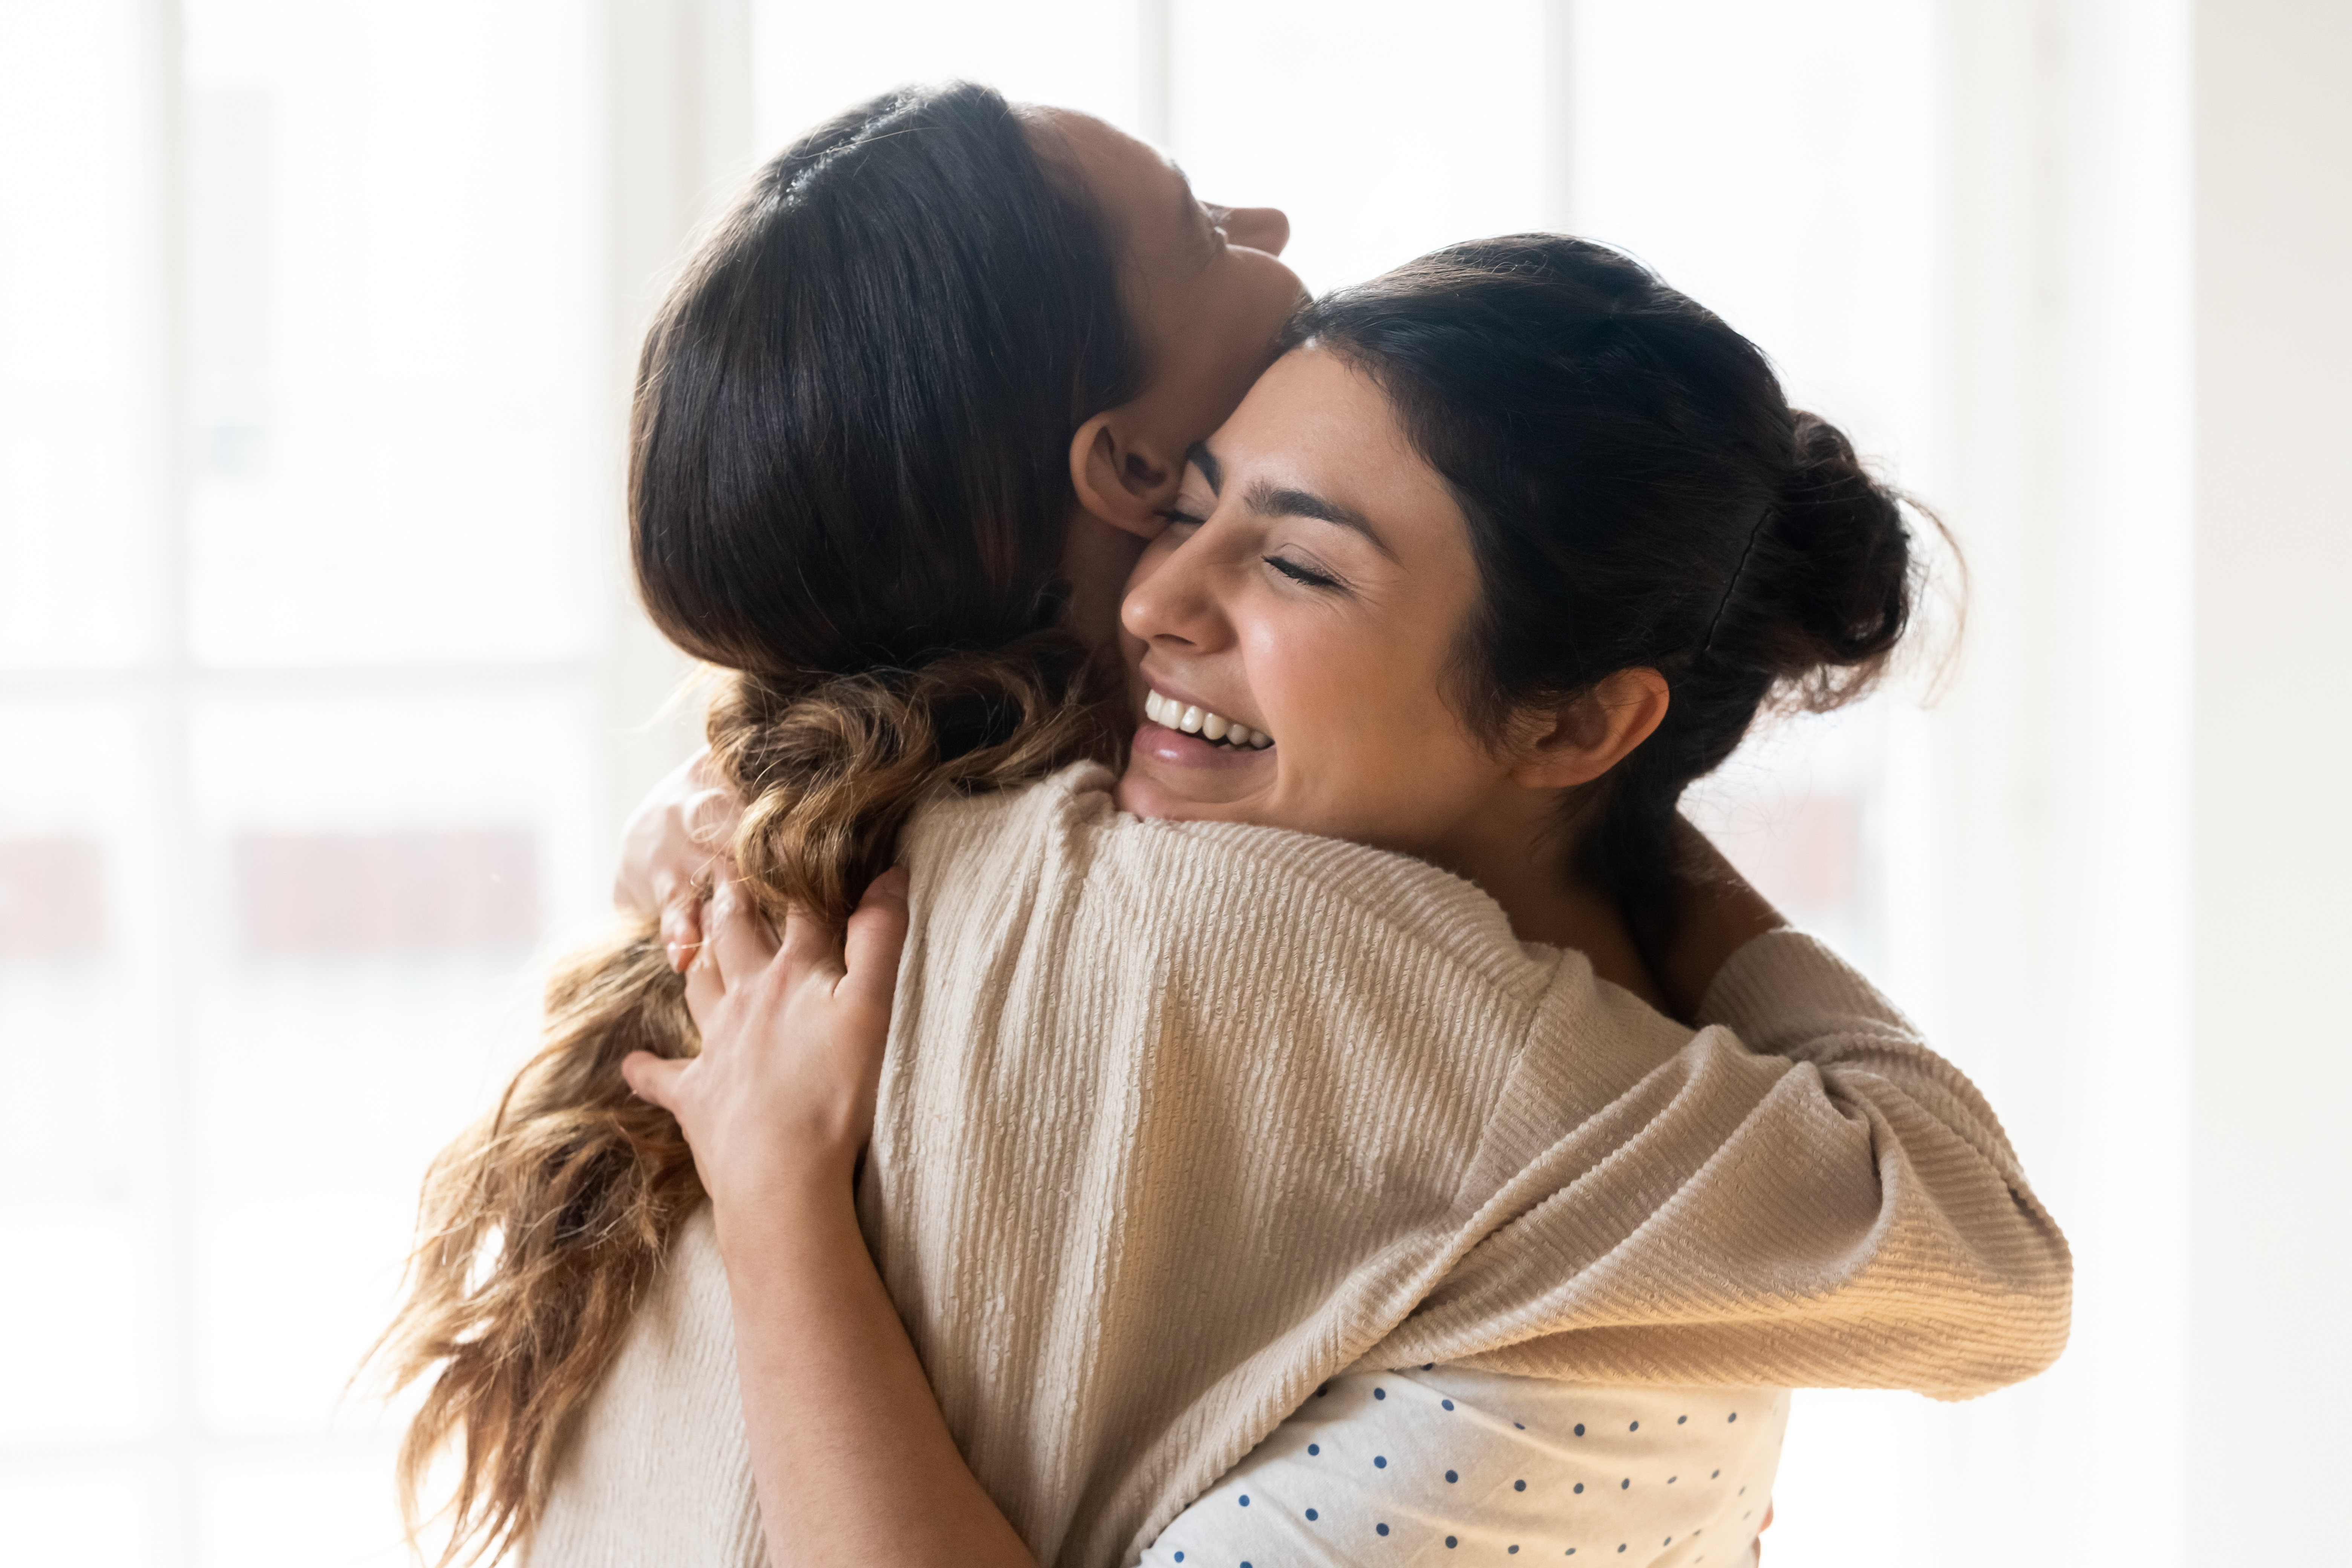 Deux femmes sourient en se serrant l'une contre l'autre | Source : Shutterstock